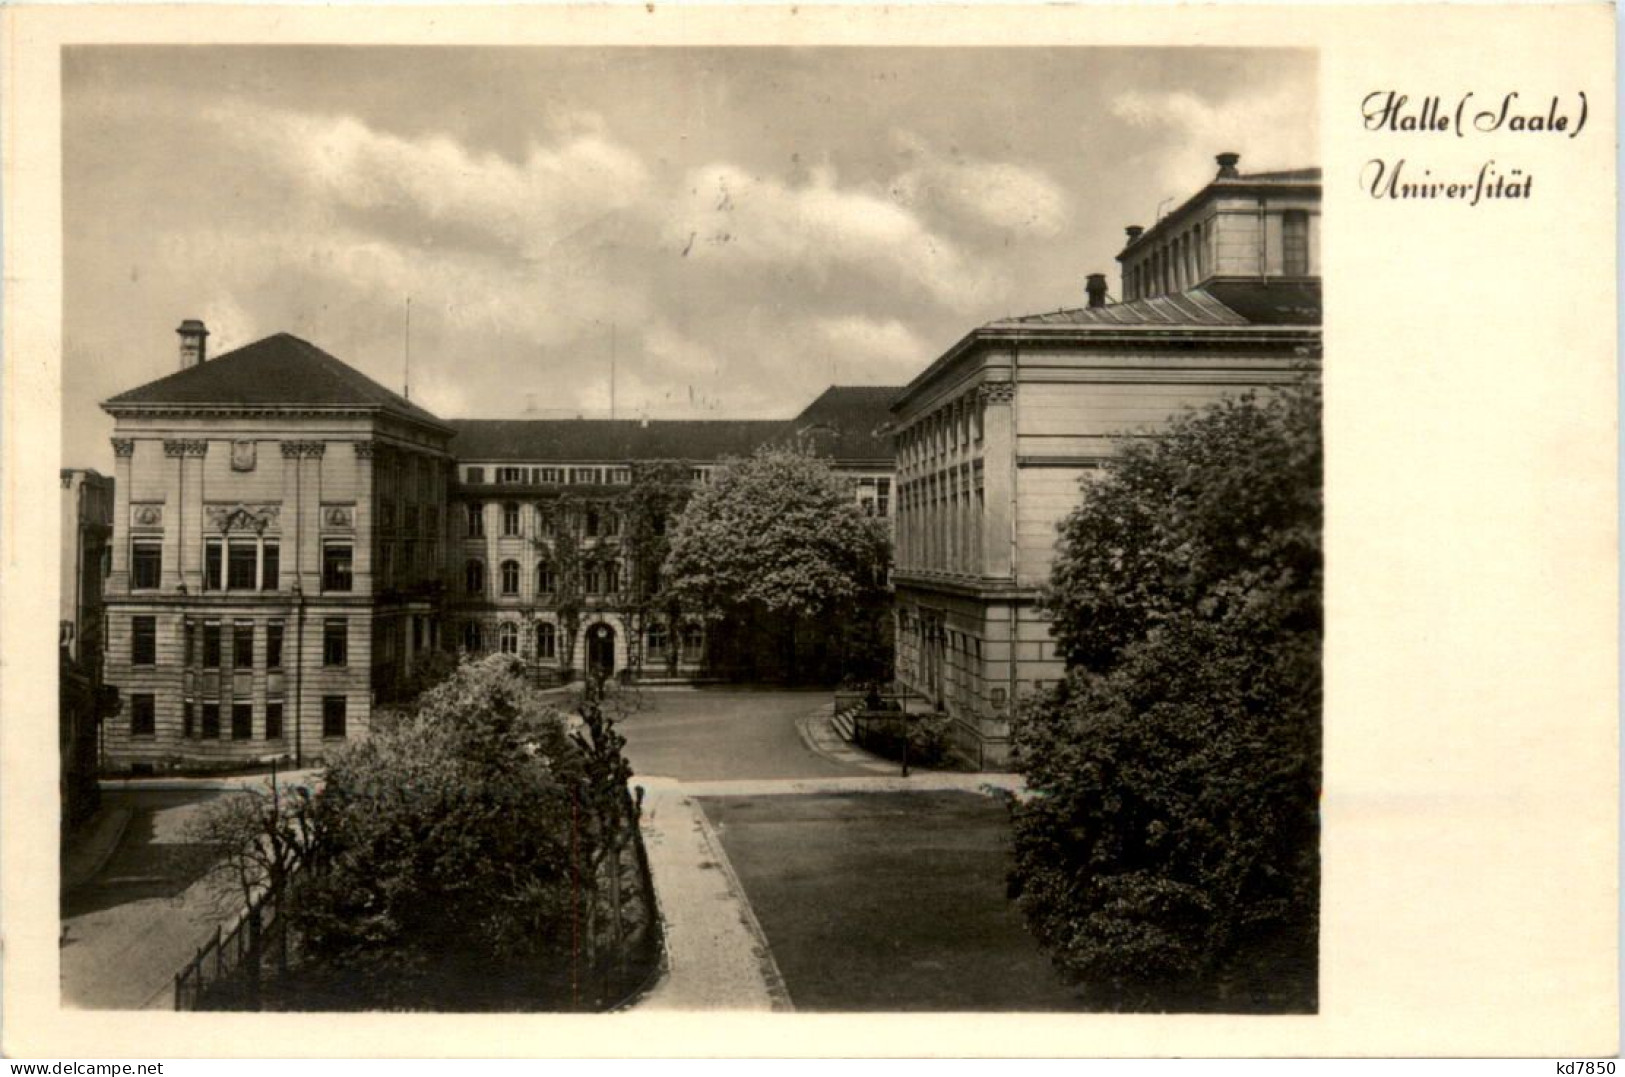 Halle Saale, Universität - Halle (Saale)